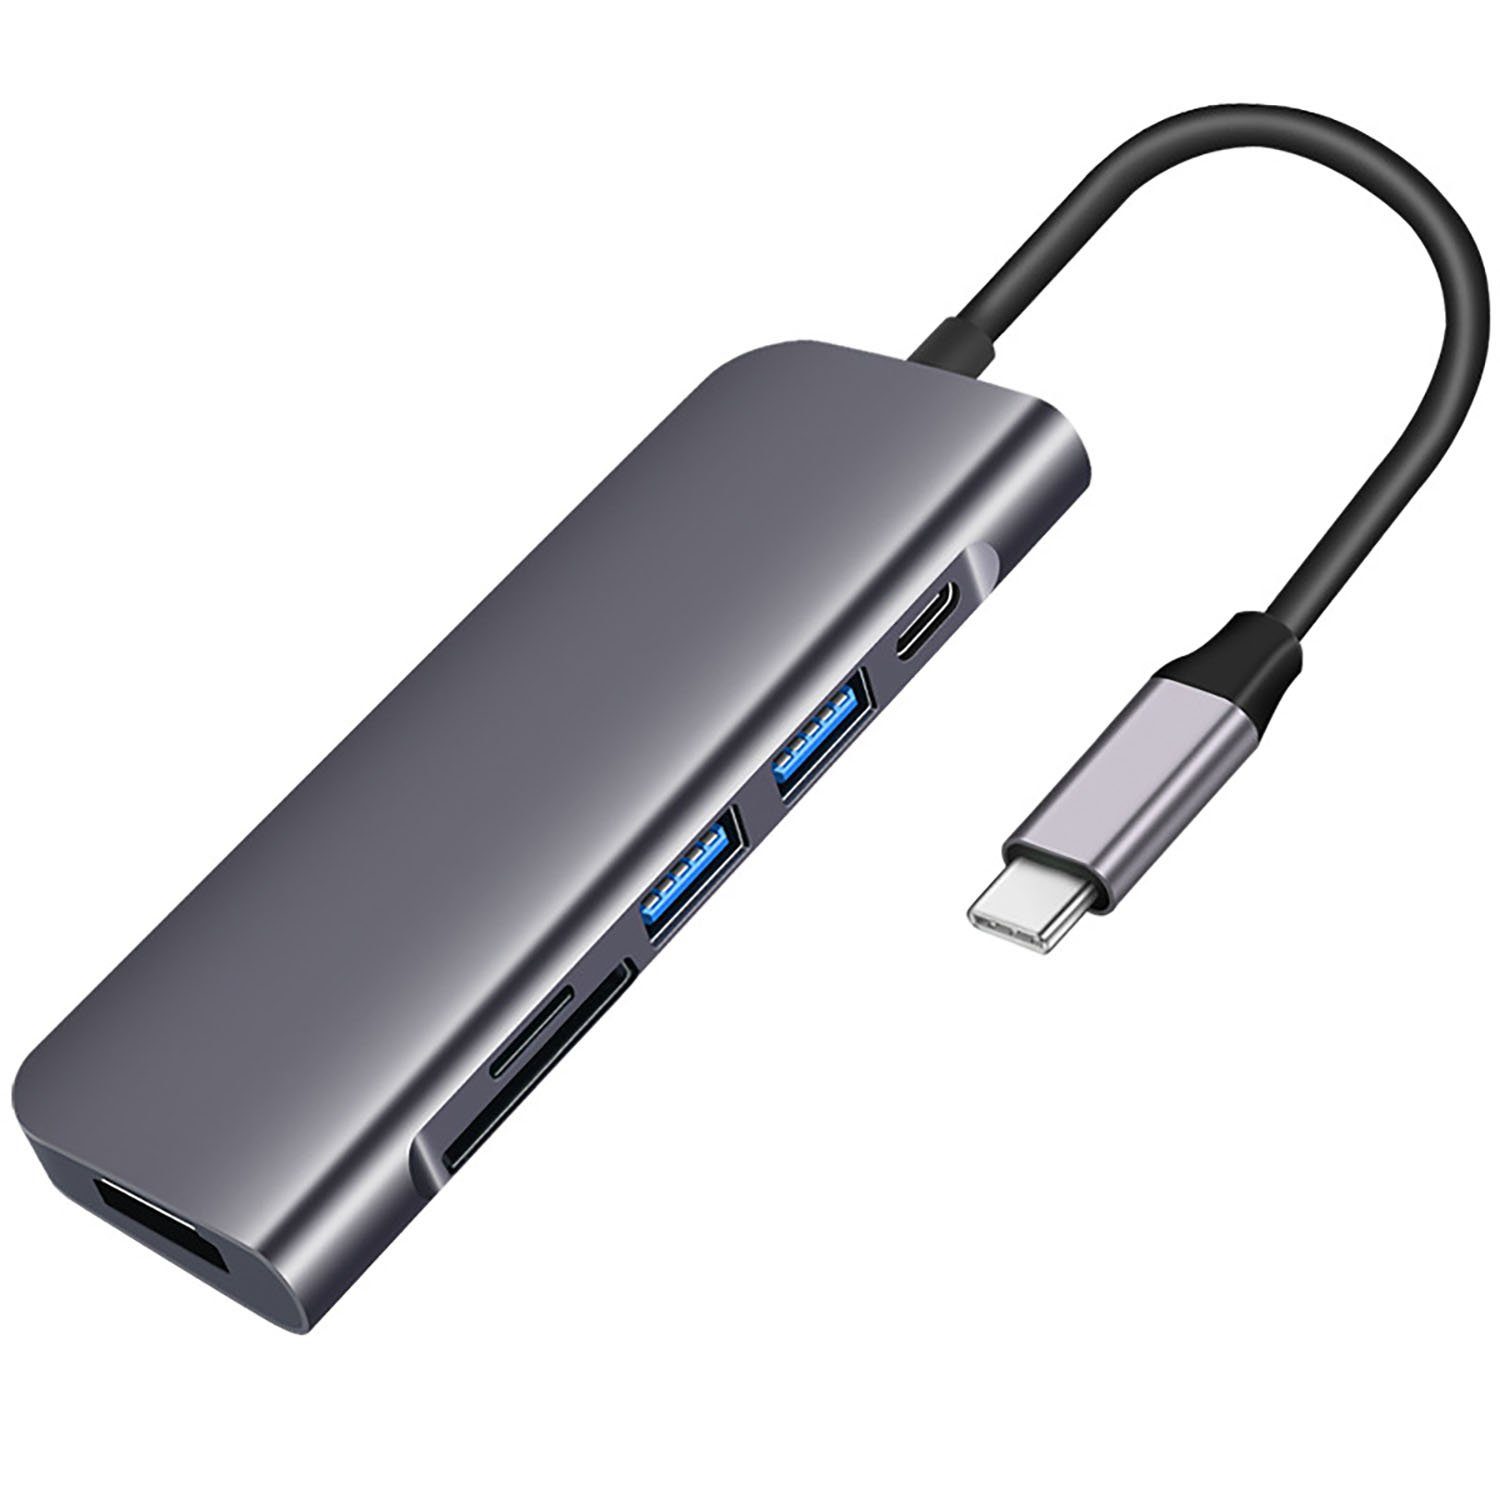 IBETTER USB C Hub 7-in-1 mit 4K 60Hz HDMI, 100W PD, SD/microSD, 2 USB 3.0  Kompatibel mit MacBook Air/Pro, iPad Pro/Air, Surface Pro 7, XPS Book usw.  USB-Adapter, 4 Fache Smart Chips